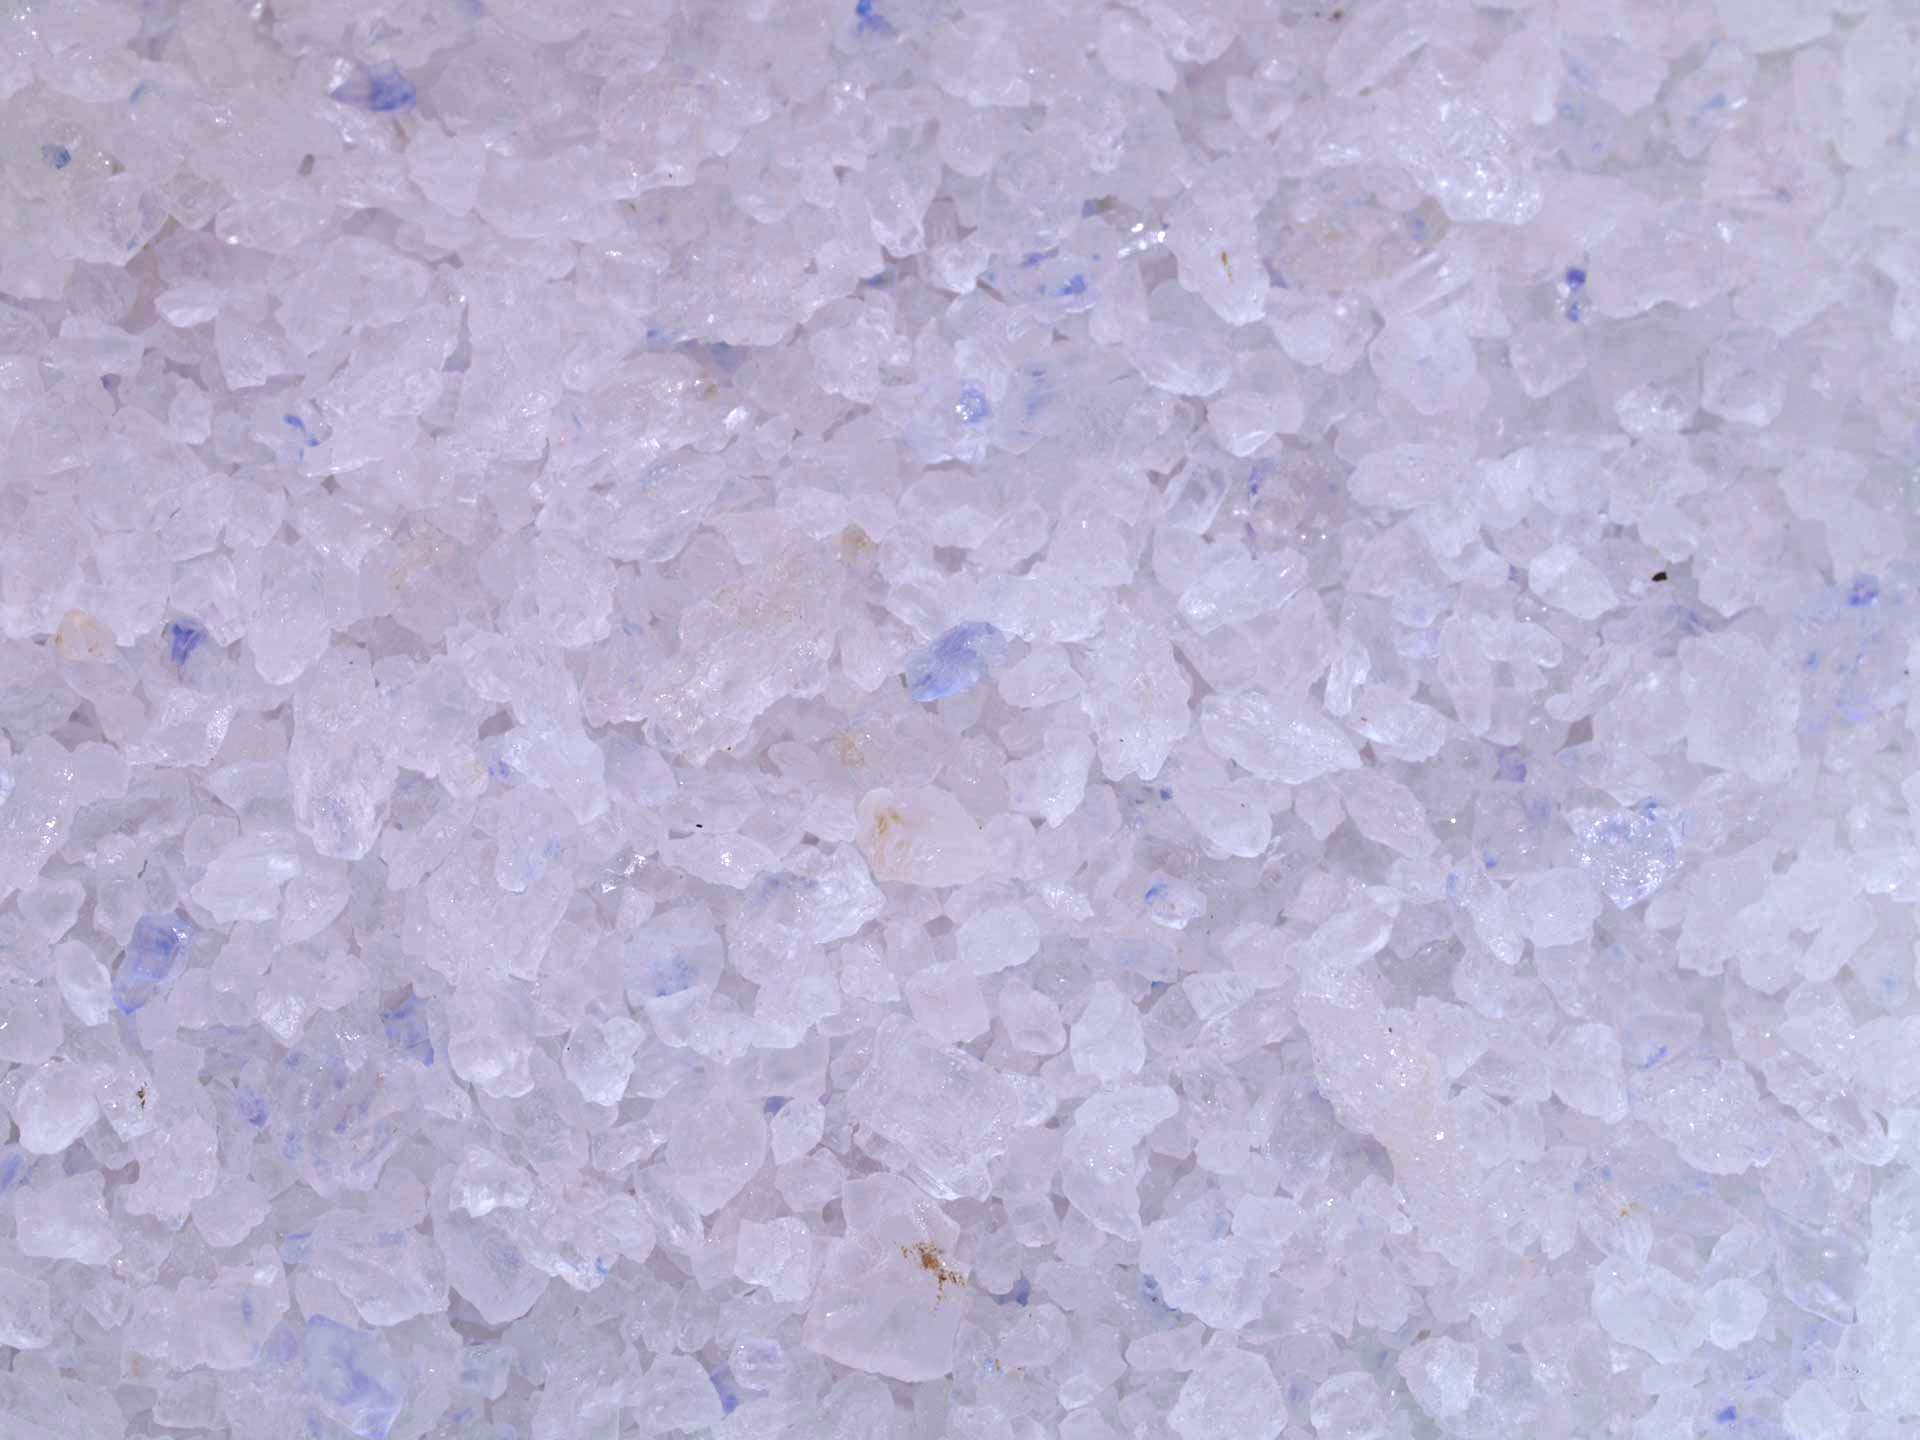 Sel bleu de Perse en cristaux pour moulin - Acheter, bienfaits, utilisation  et recettes